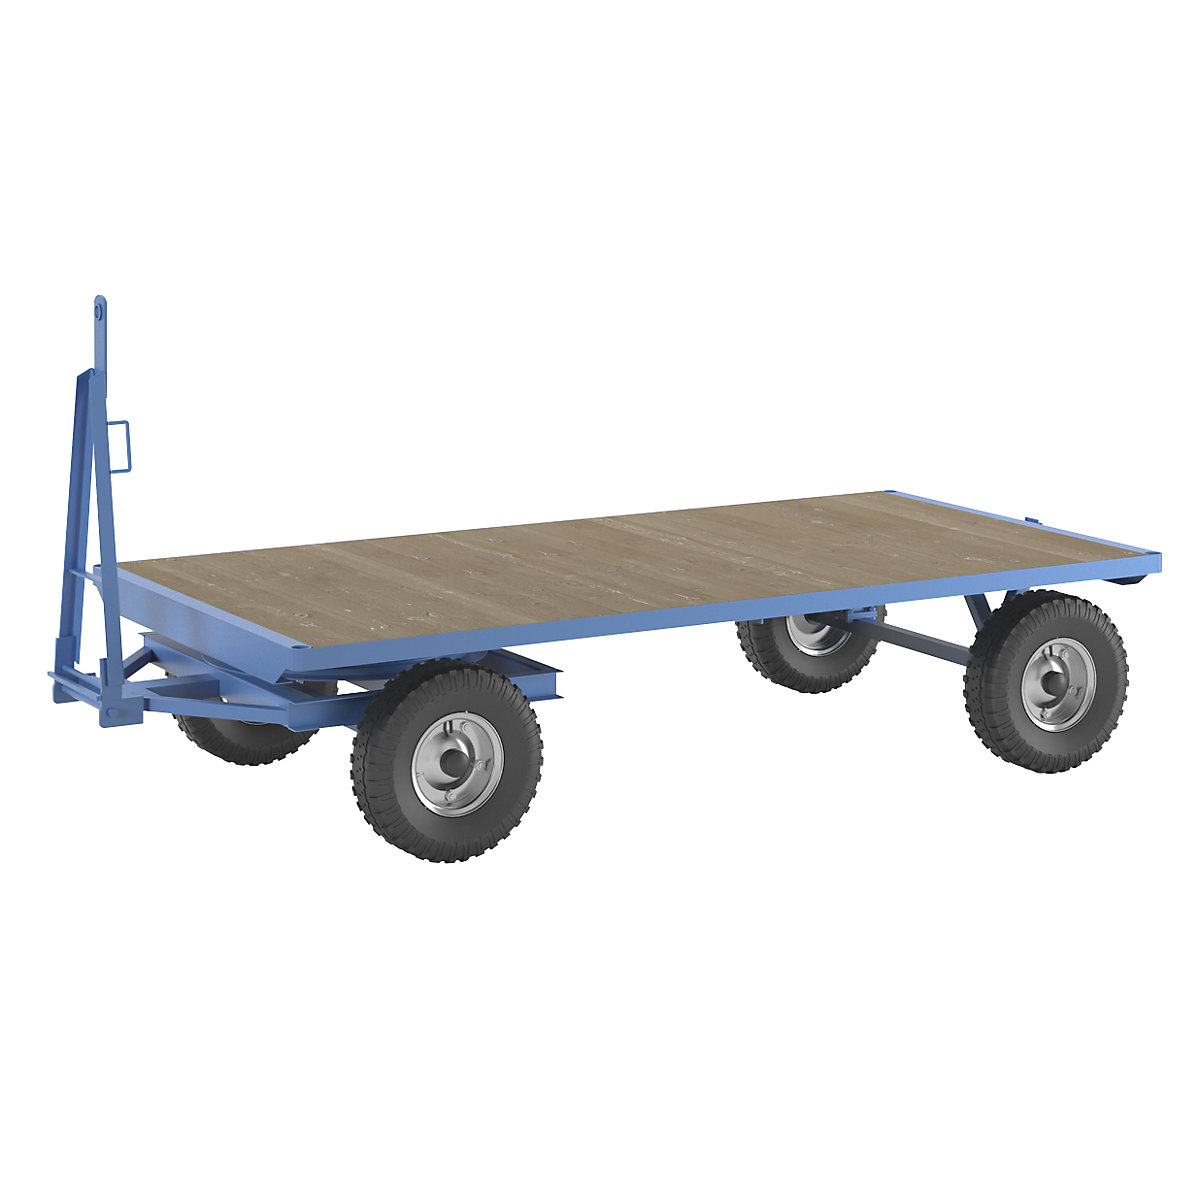 Rimorchio per trattori – eurokraft pro, sterzo a ralla, portata 5 t, superficie di carico 3 x 1,5 m, blu chiaro-8